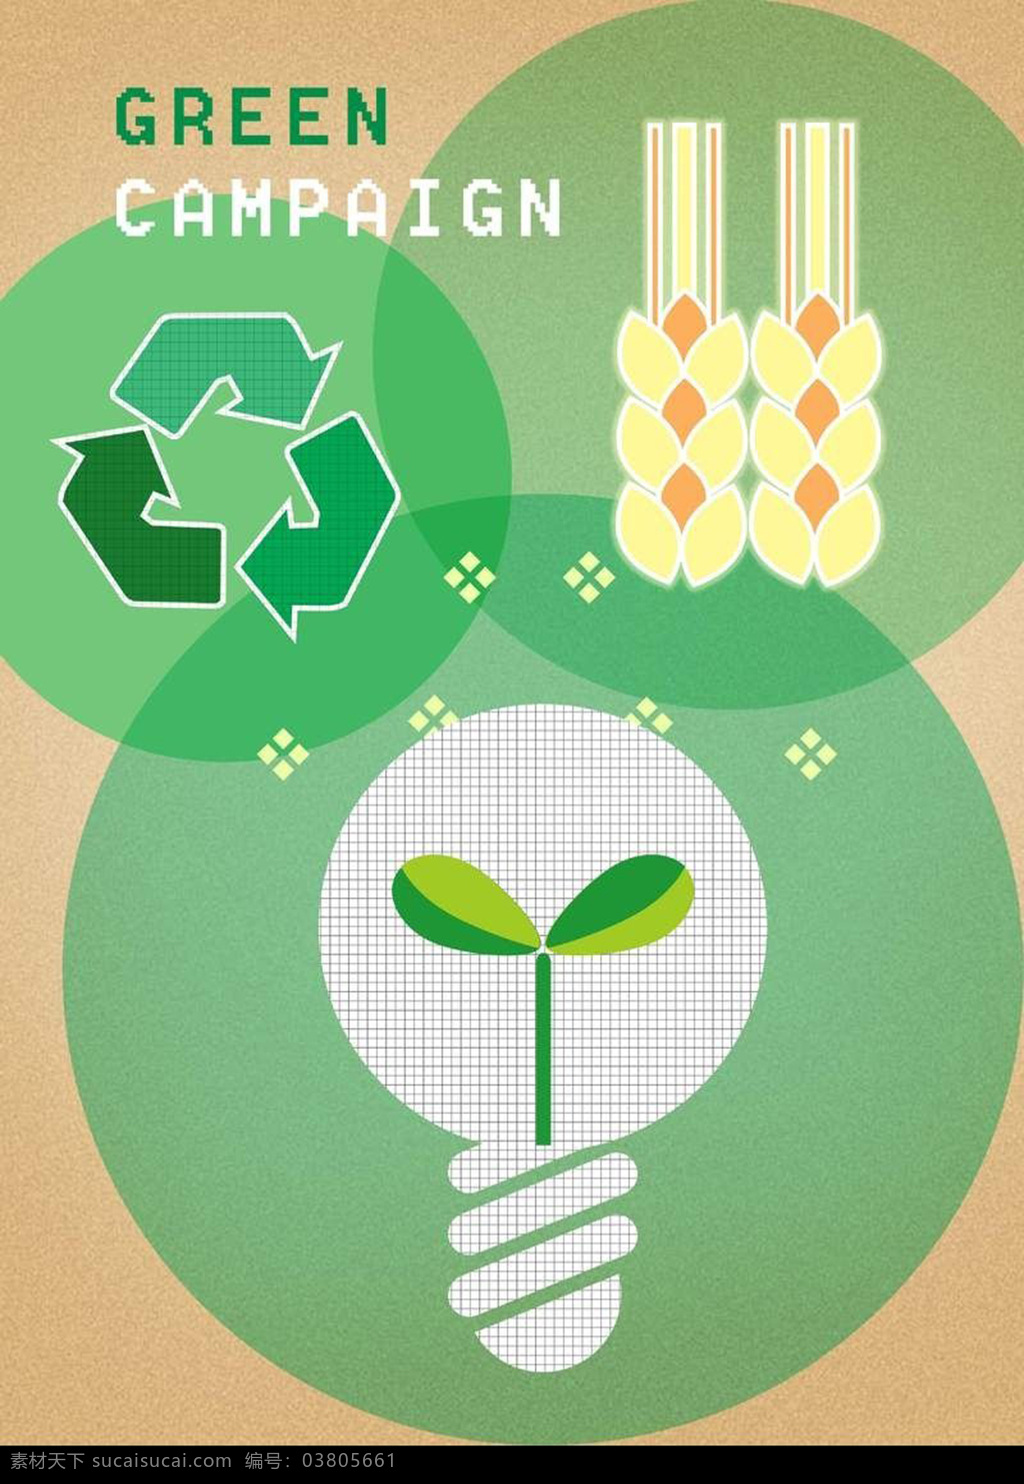 灯泡 内 嫩芽 麦穗 环保 插画 循环 标志 环保标志 麦穗环保 插画环 保素 greencampaign 绿色 运动 创意灯泡